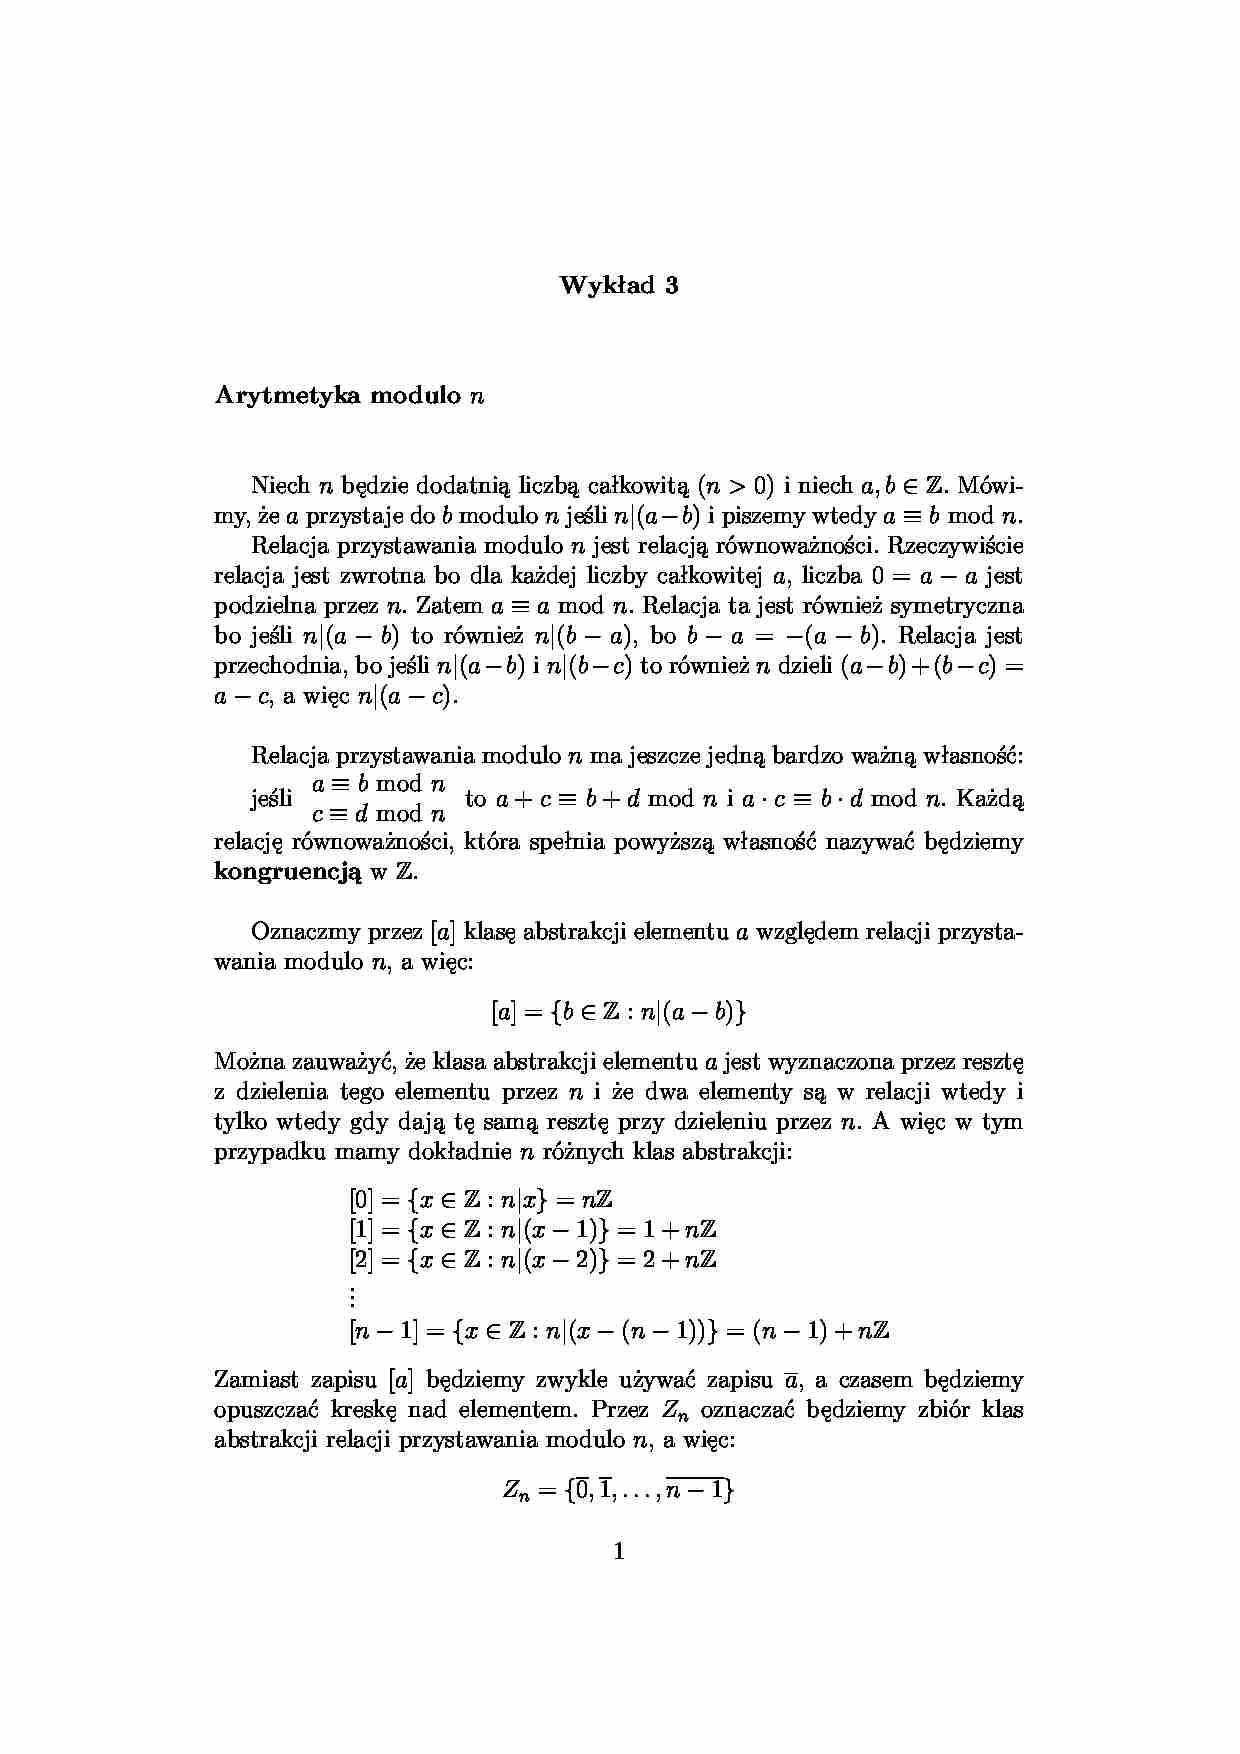 arytmetyka modulo n - omówienie - strona 1